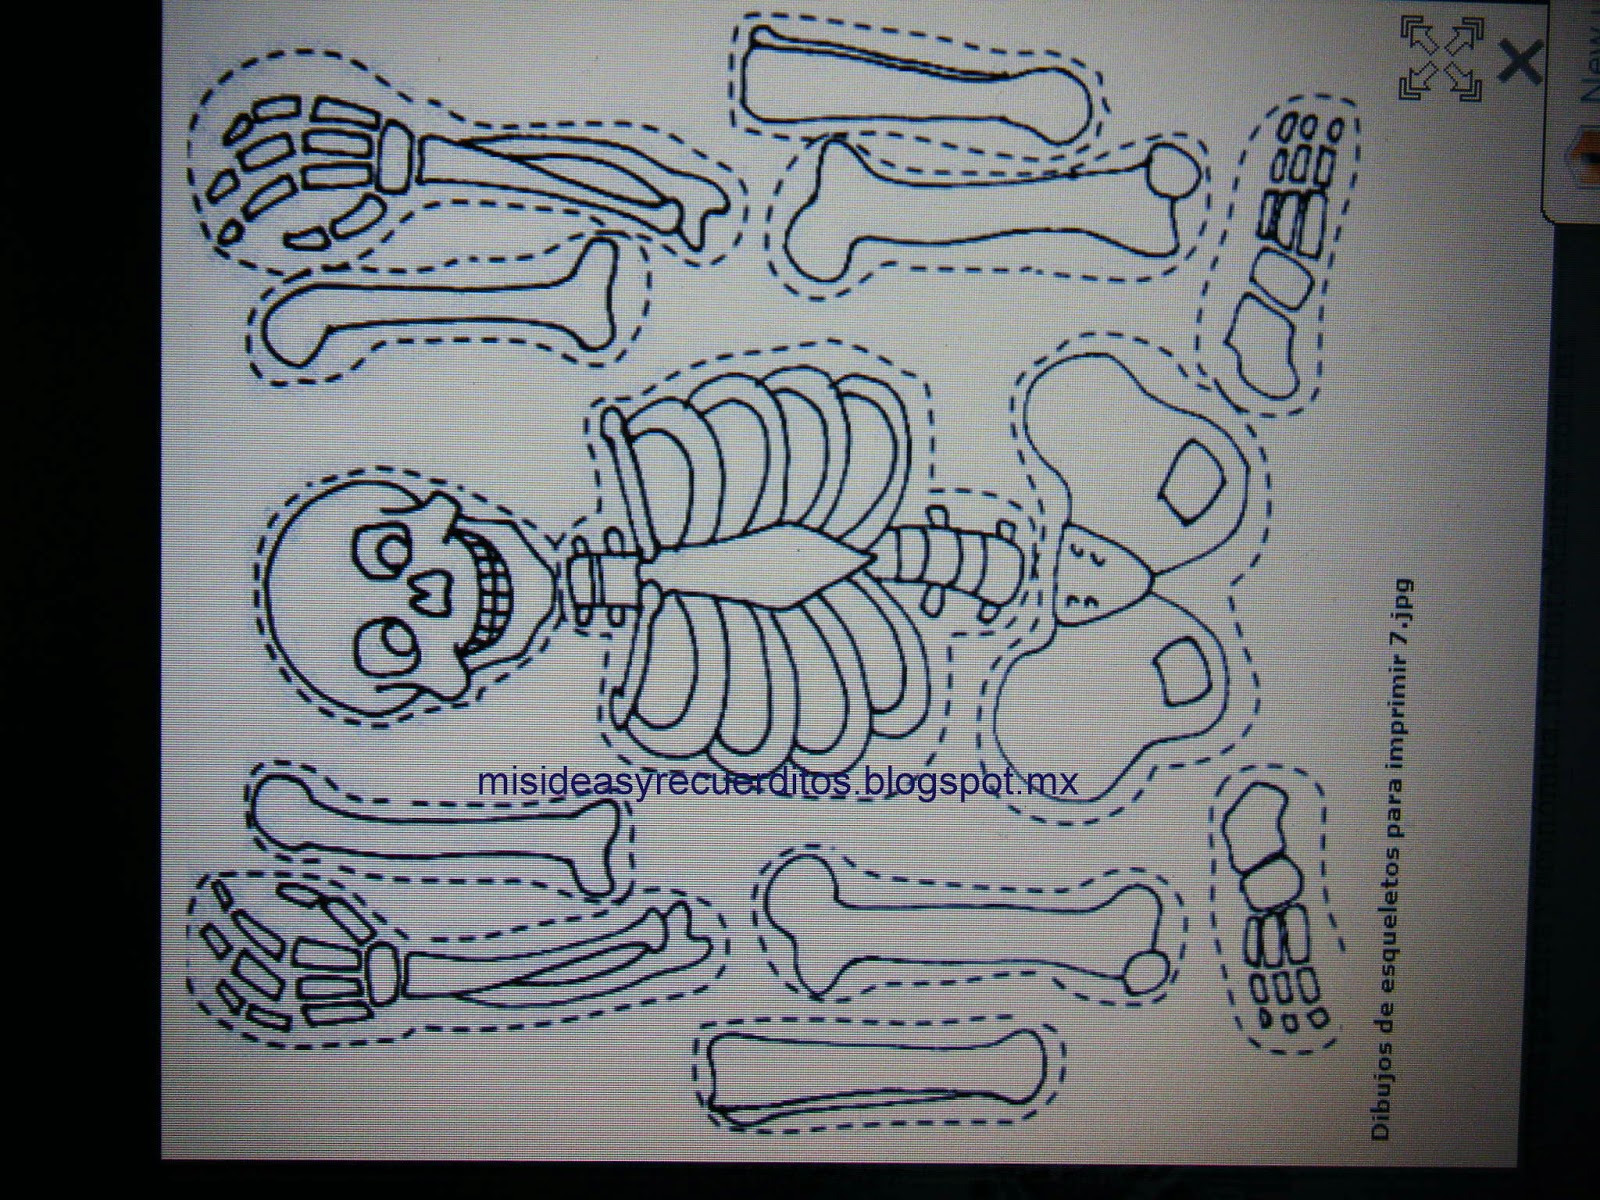 Empleado Más manejo mis ideas y recuerditos: Disfraz de esqueleto